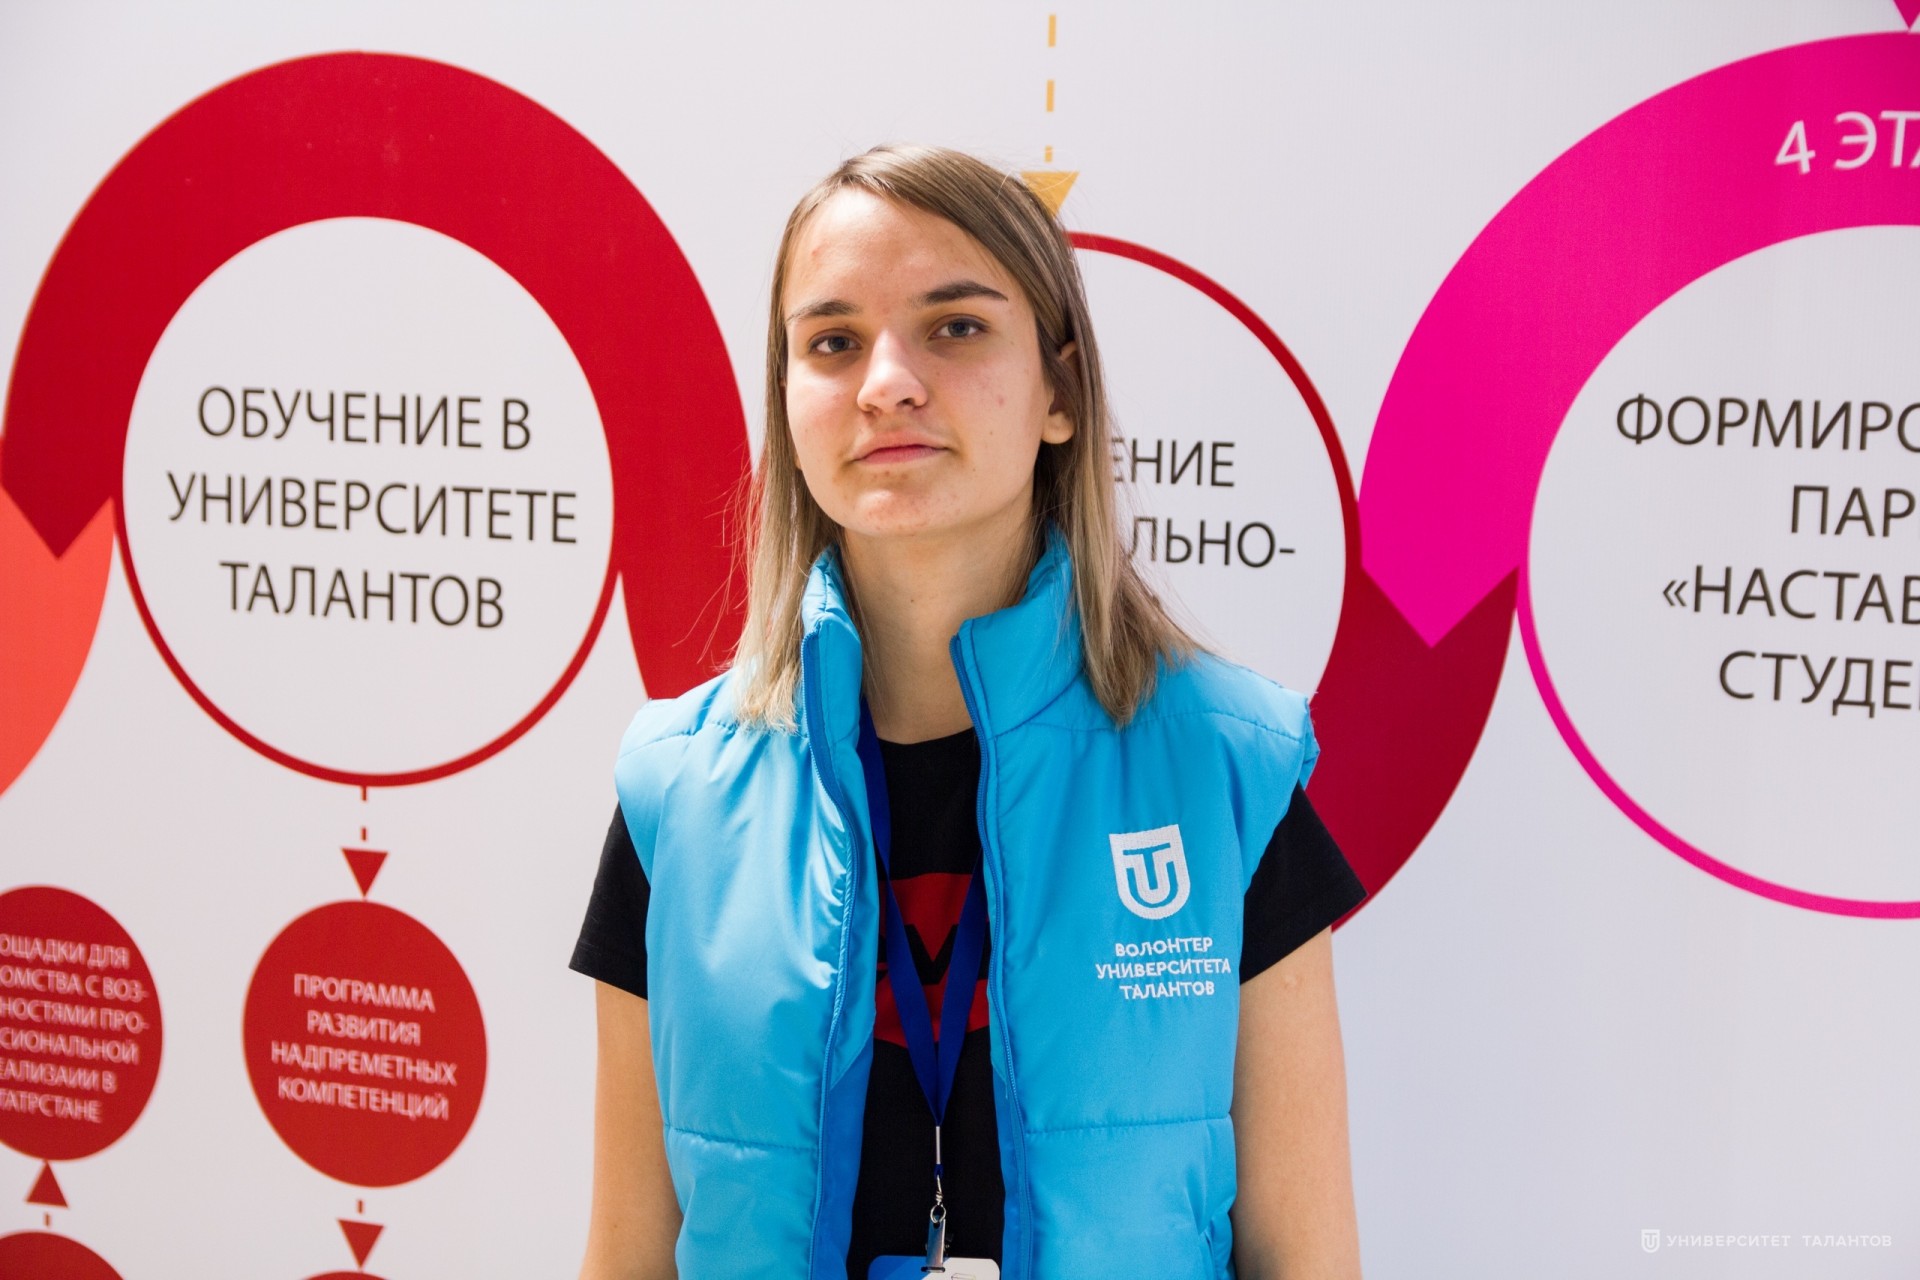 Альбина Гайнутдинова: «Волонтерство помогает понять, что все люди на равных»